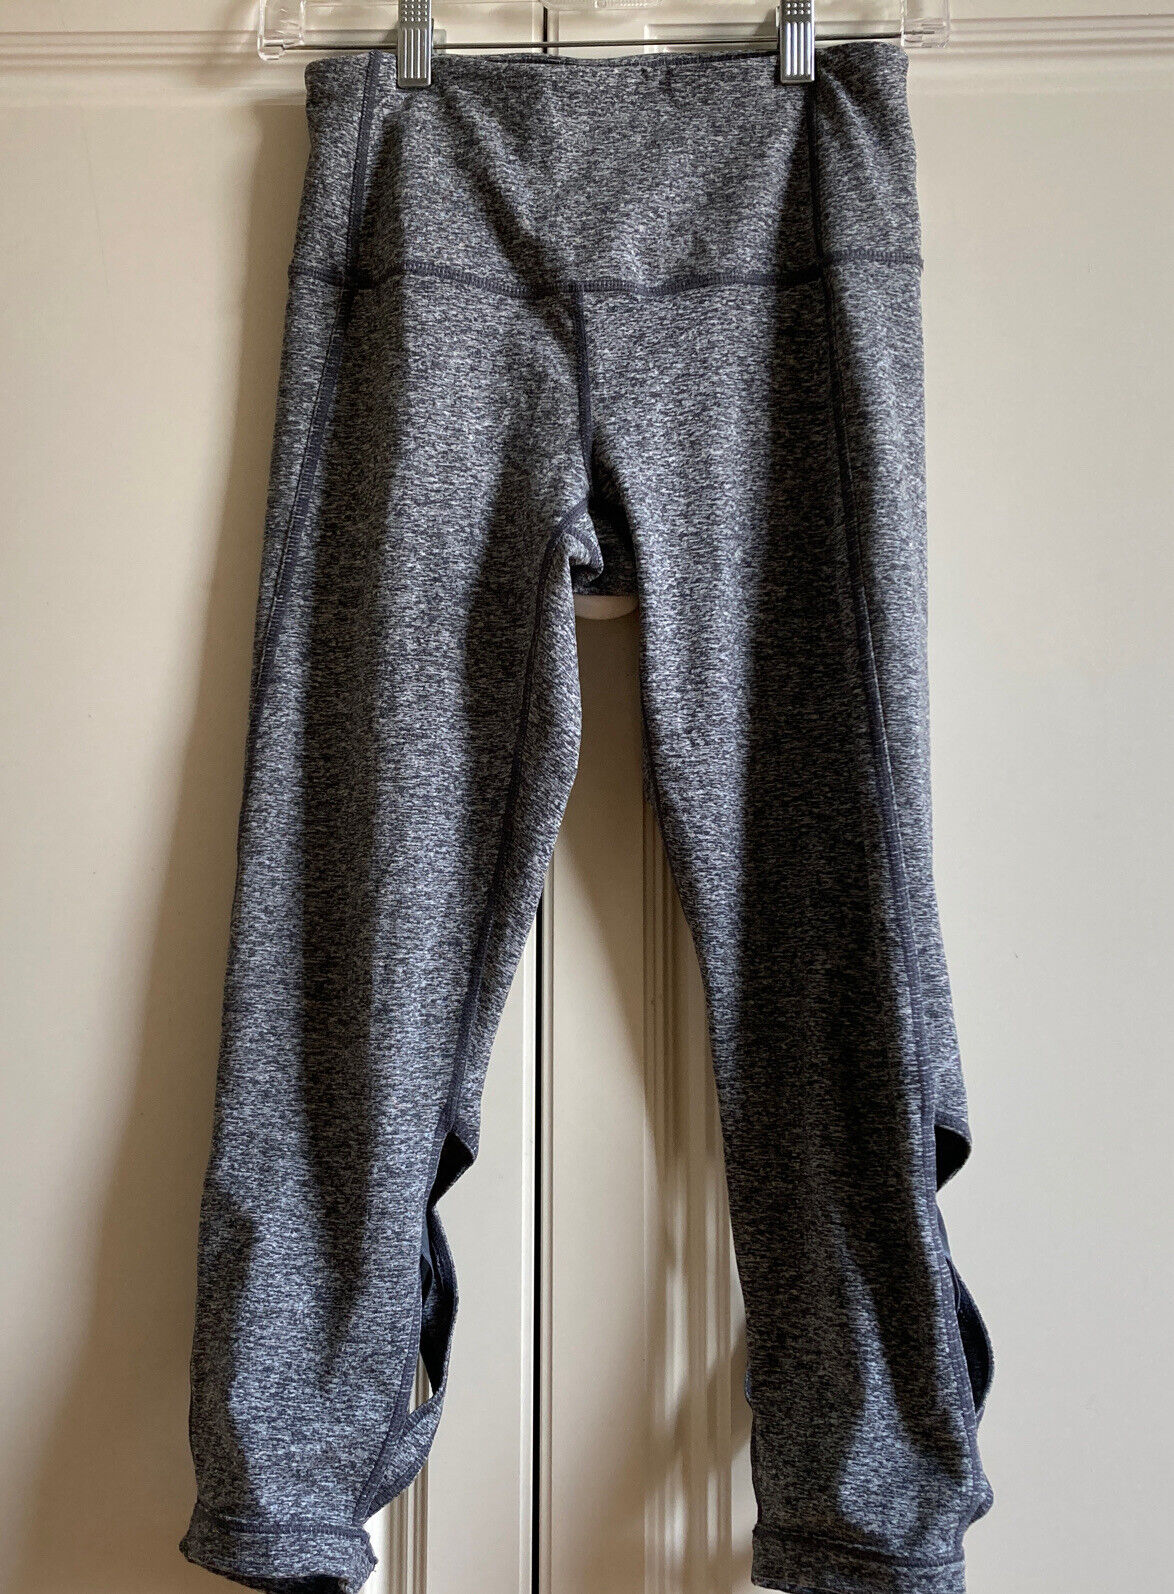 Zella capri Yoga pants size small space dye - image 6